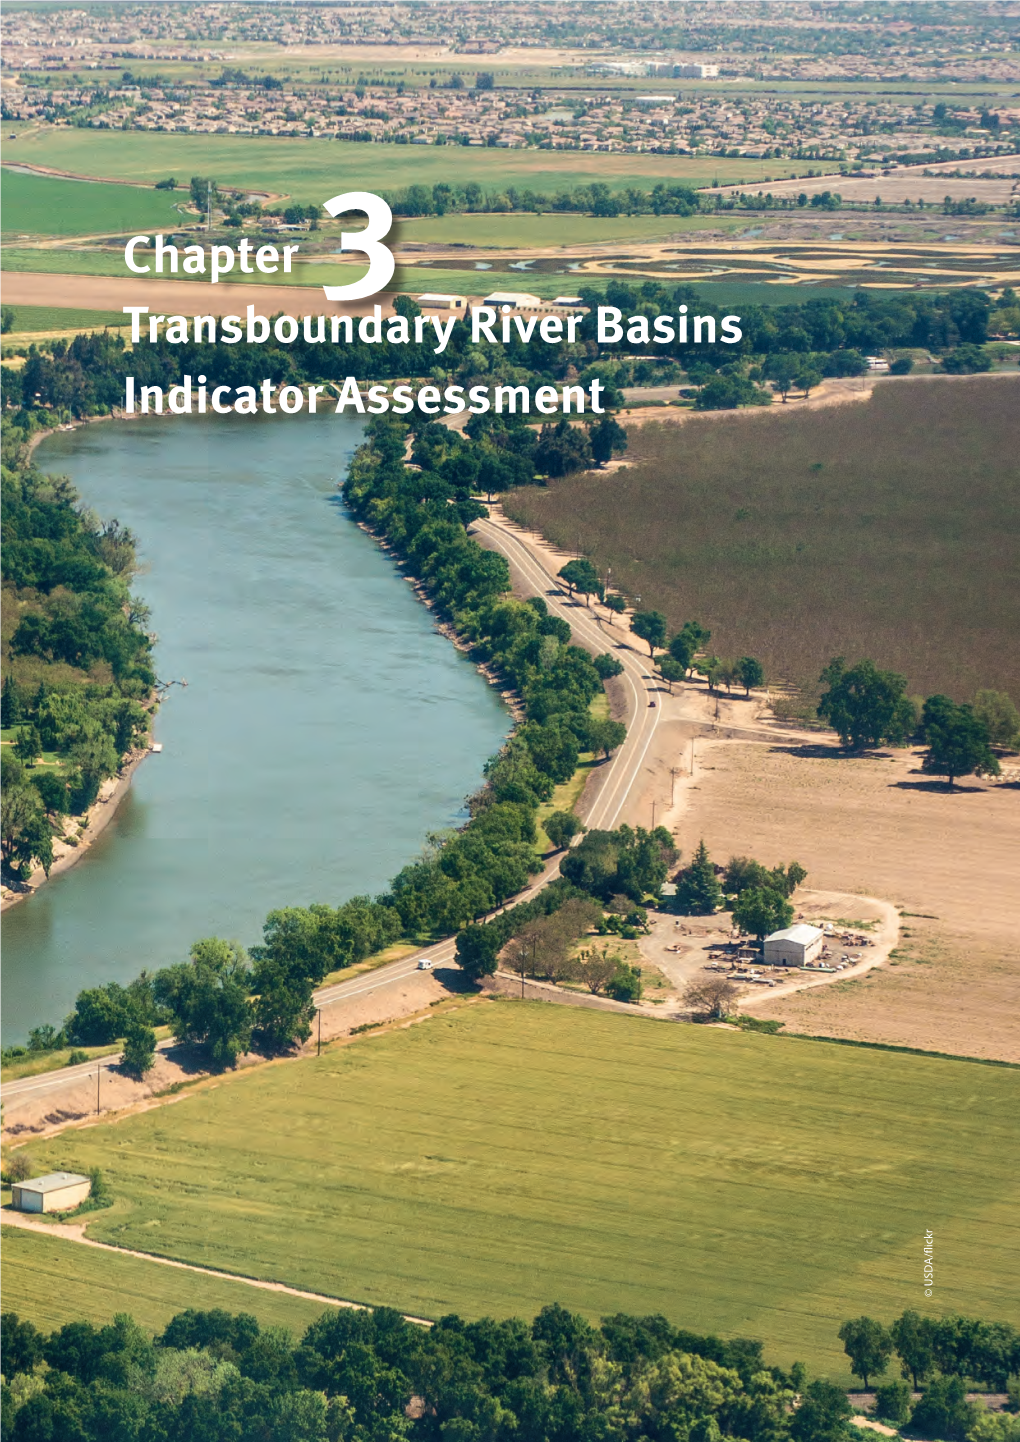 Chapter 3 Transboundary River Basins Indicator Assessment © USDA/Flickr